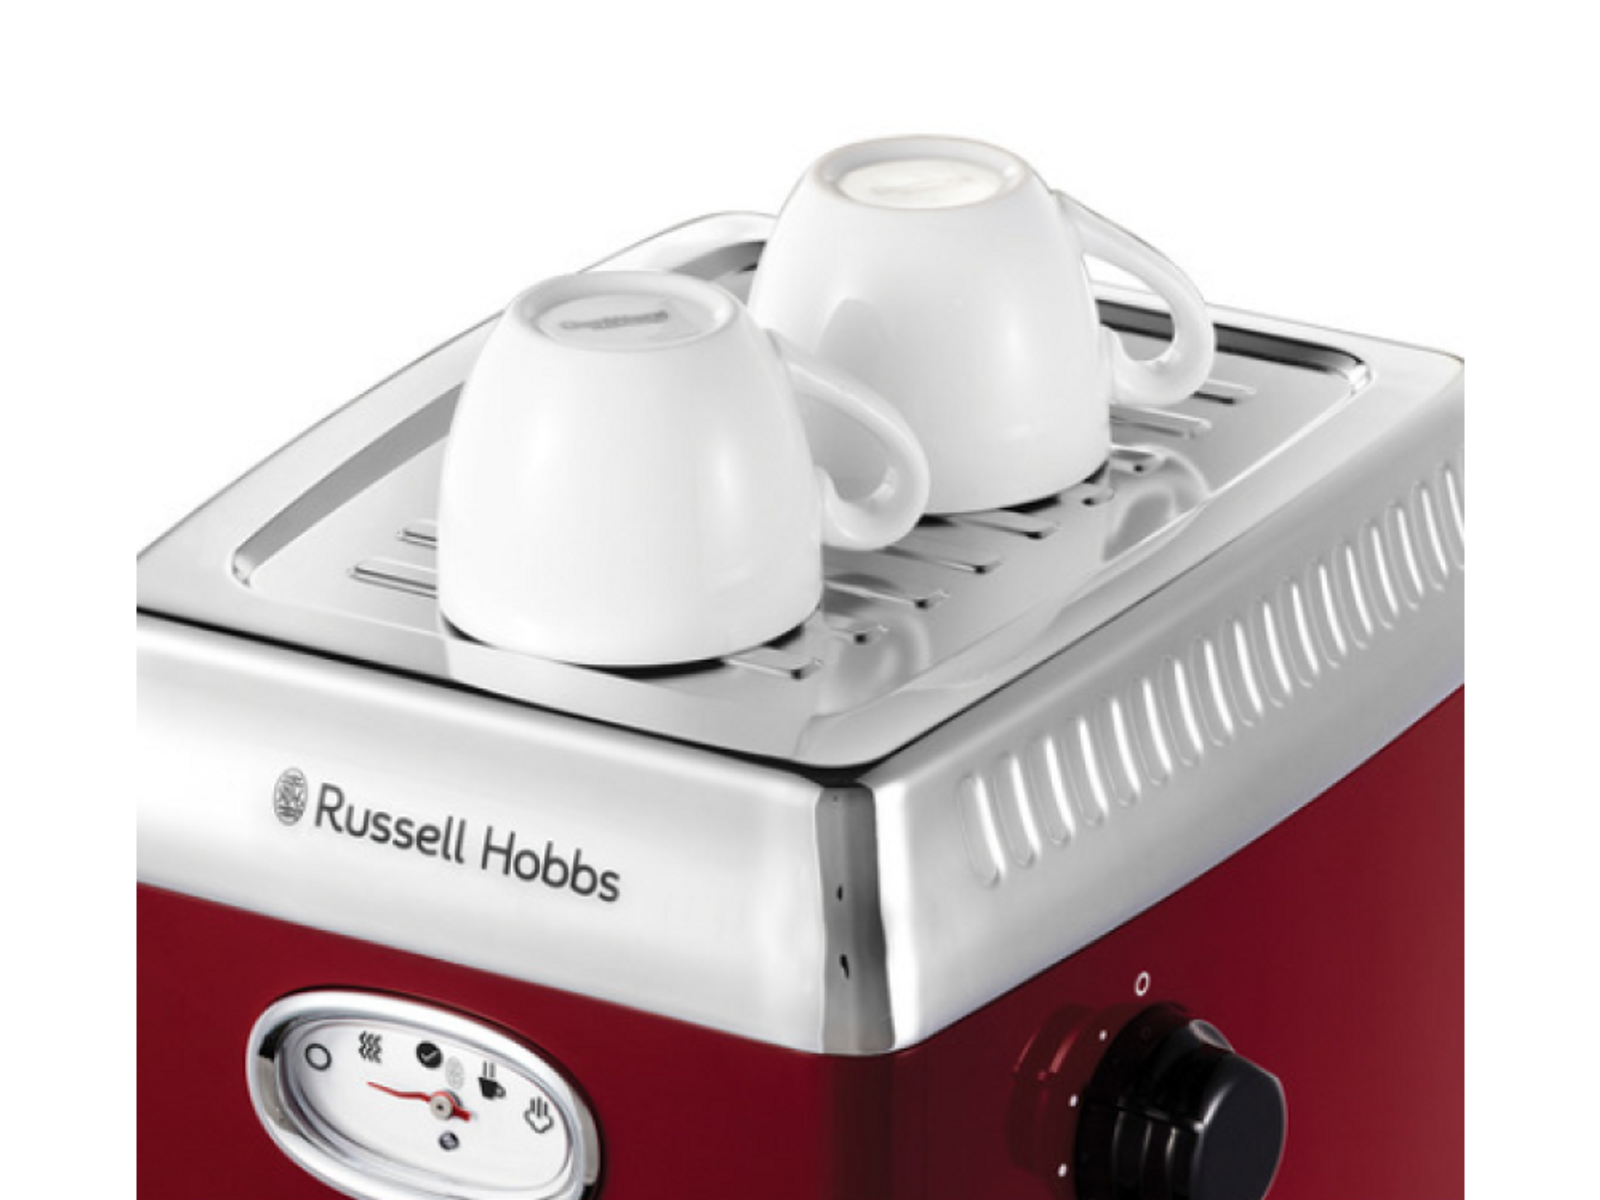 RUSSELL HOBBS Siebträger Retro Espressomaschine rot Espressomaschine